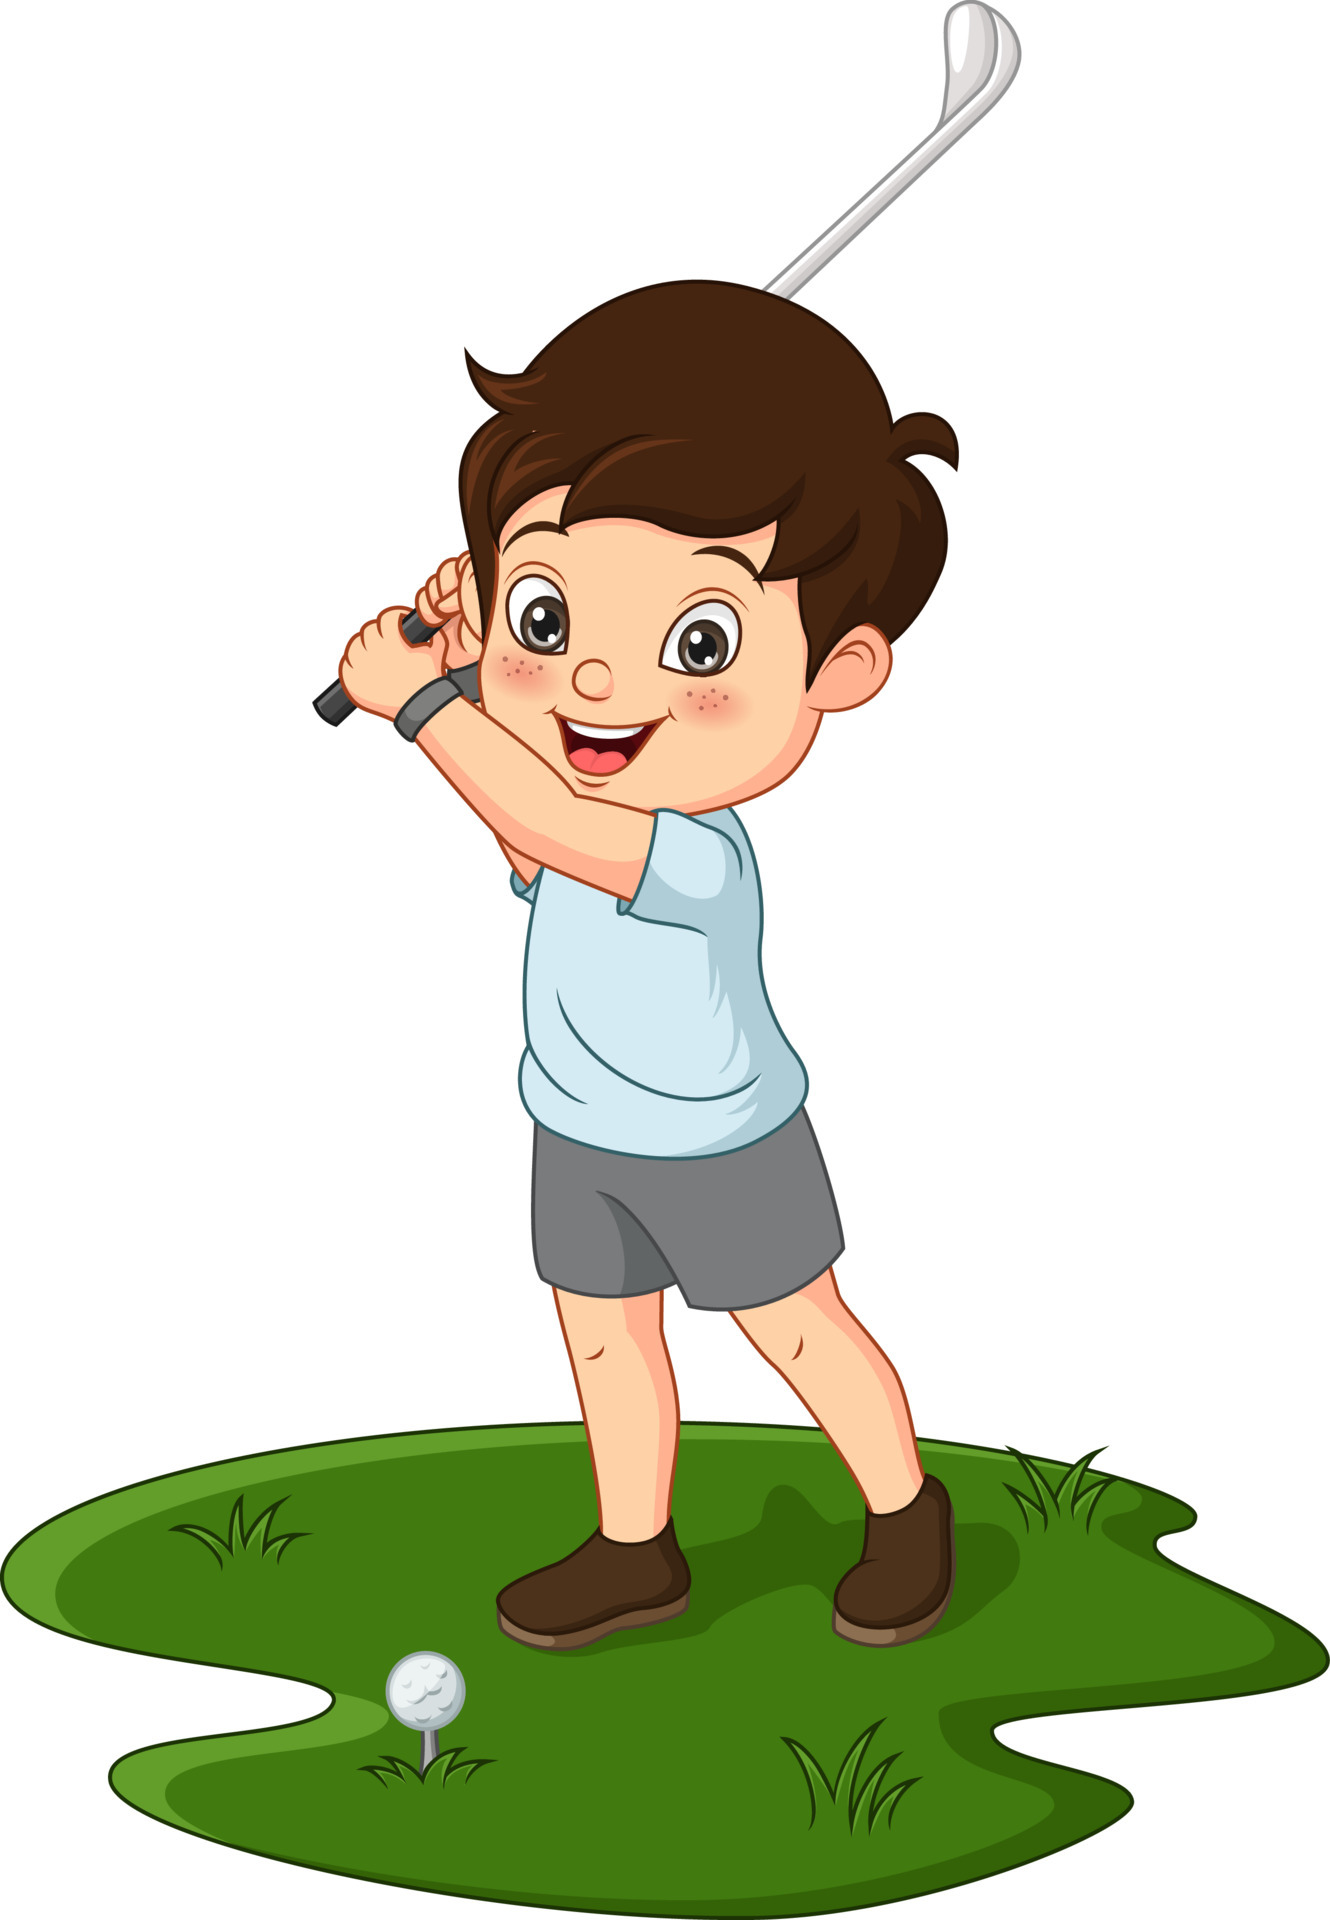 Cartoon cute little boy playing golf 5112451 Vector Art at Vecteezy